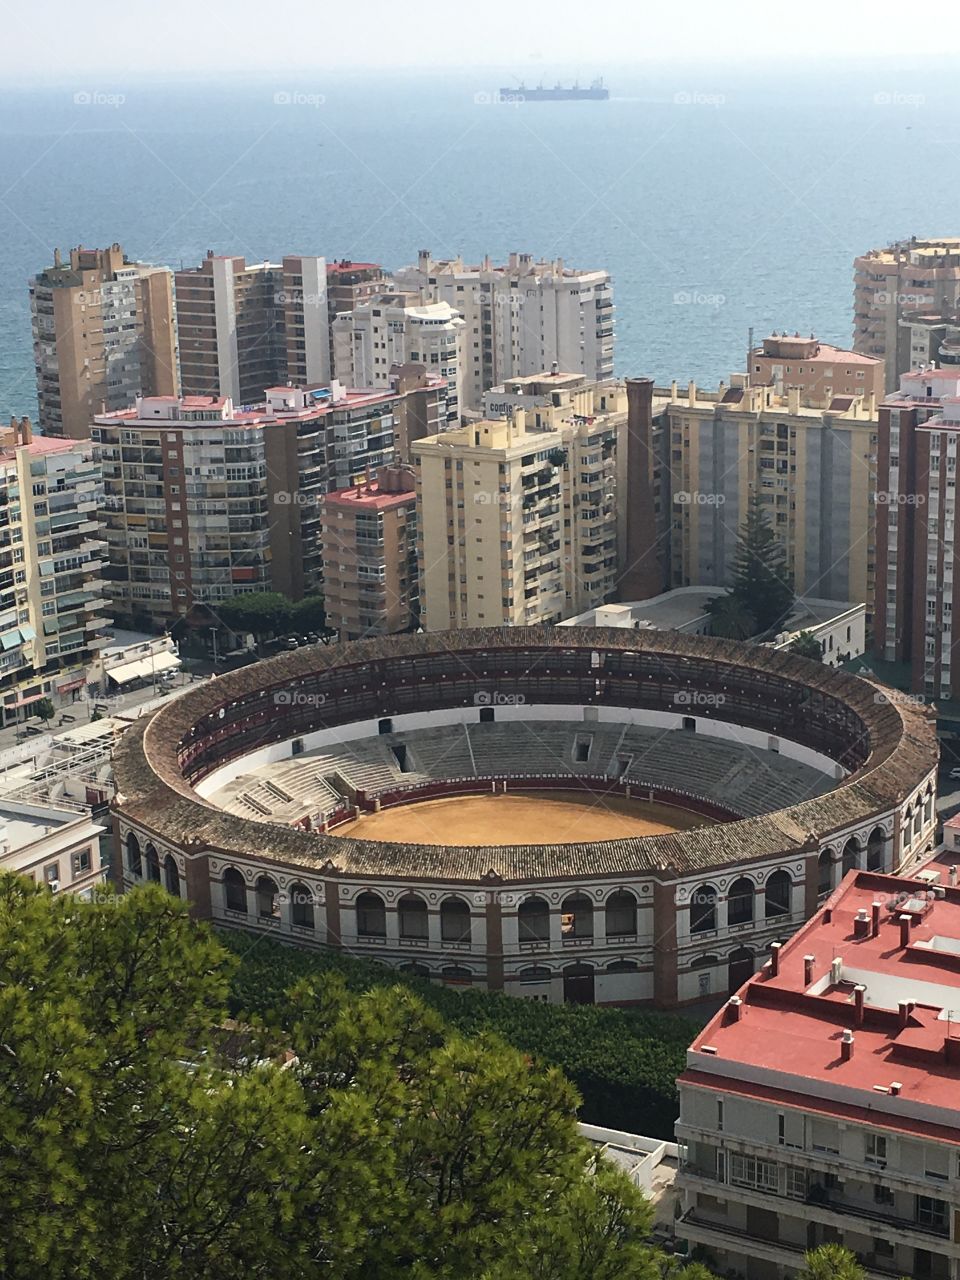 A nice overlook of a stadium in Málaga, Spain